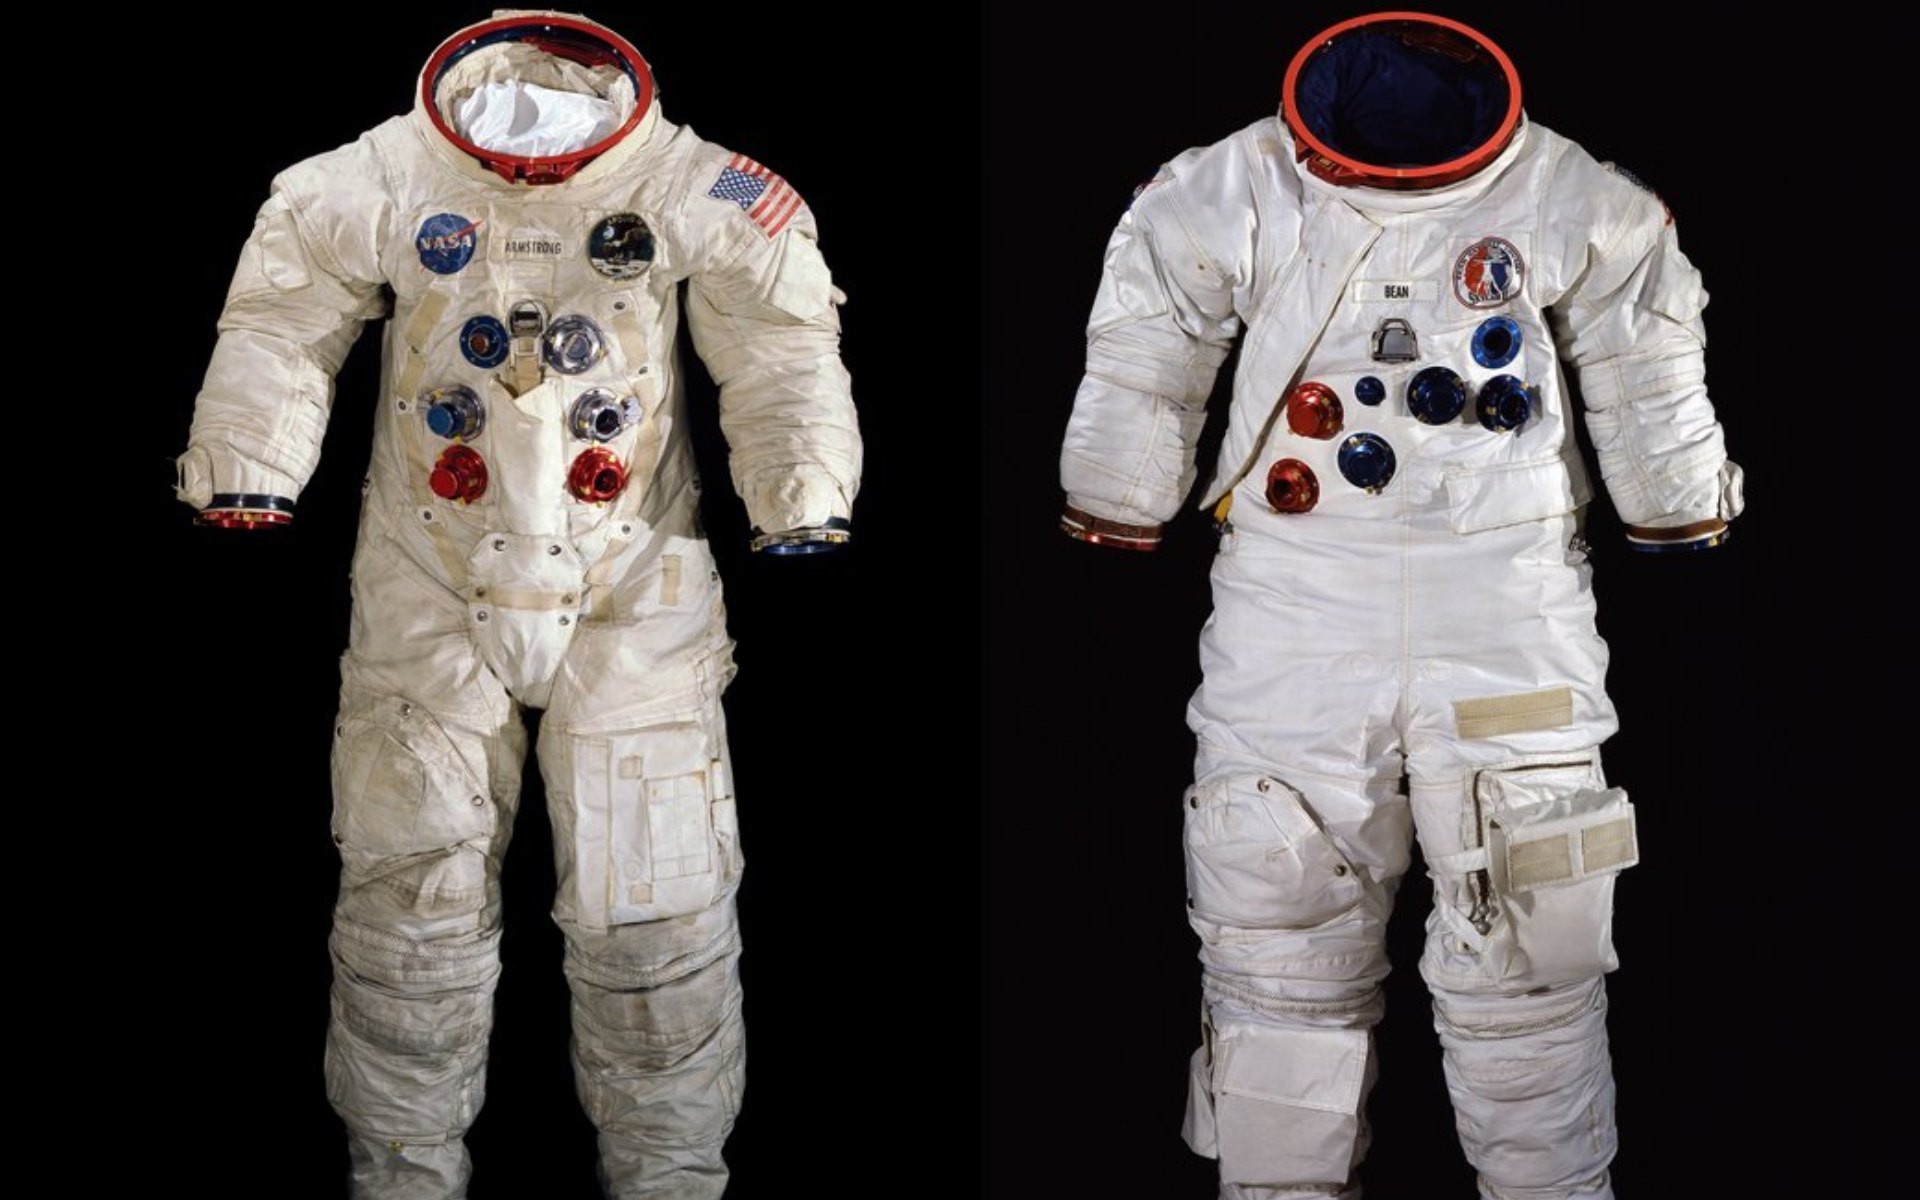 Специальные скафандры. Скафандр Космонавта НАСА. Костюм астронавта NASA 134-146. Костюмы астронавтов Аполлон 11. Скафандр Аполлон 11.